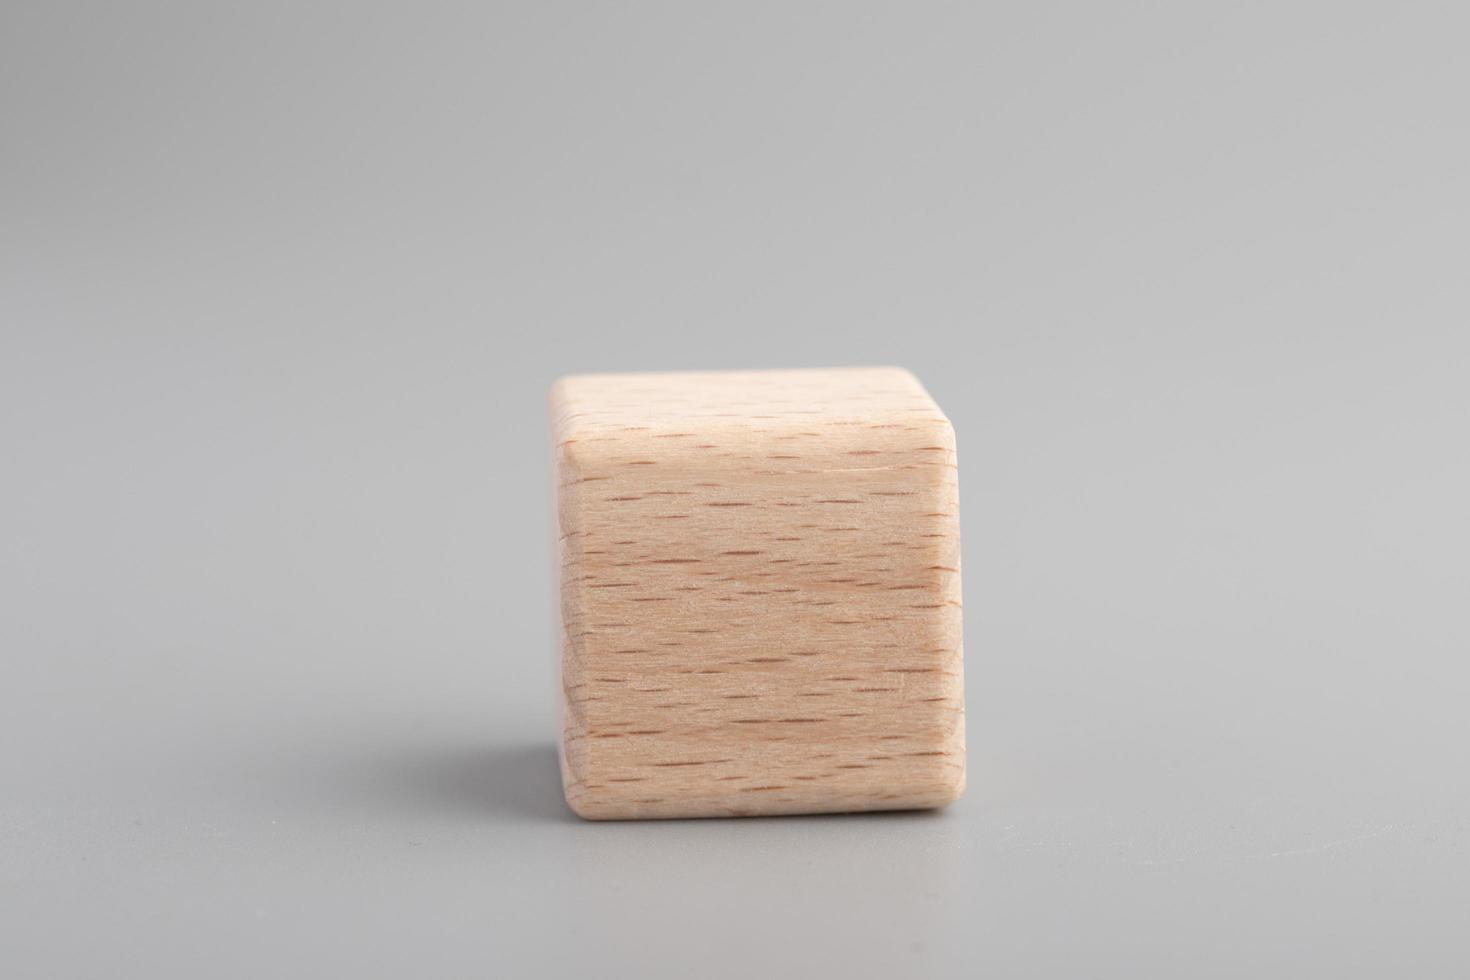 simples dados de madera vacíos, un cubo en blanco hecho de madera con un elemento central, fondo gris. copie el espacio, el espacio del logotipo en el medio. foto